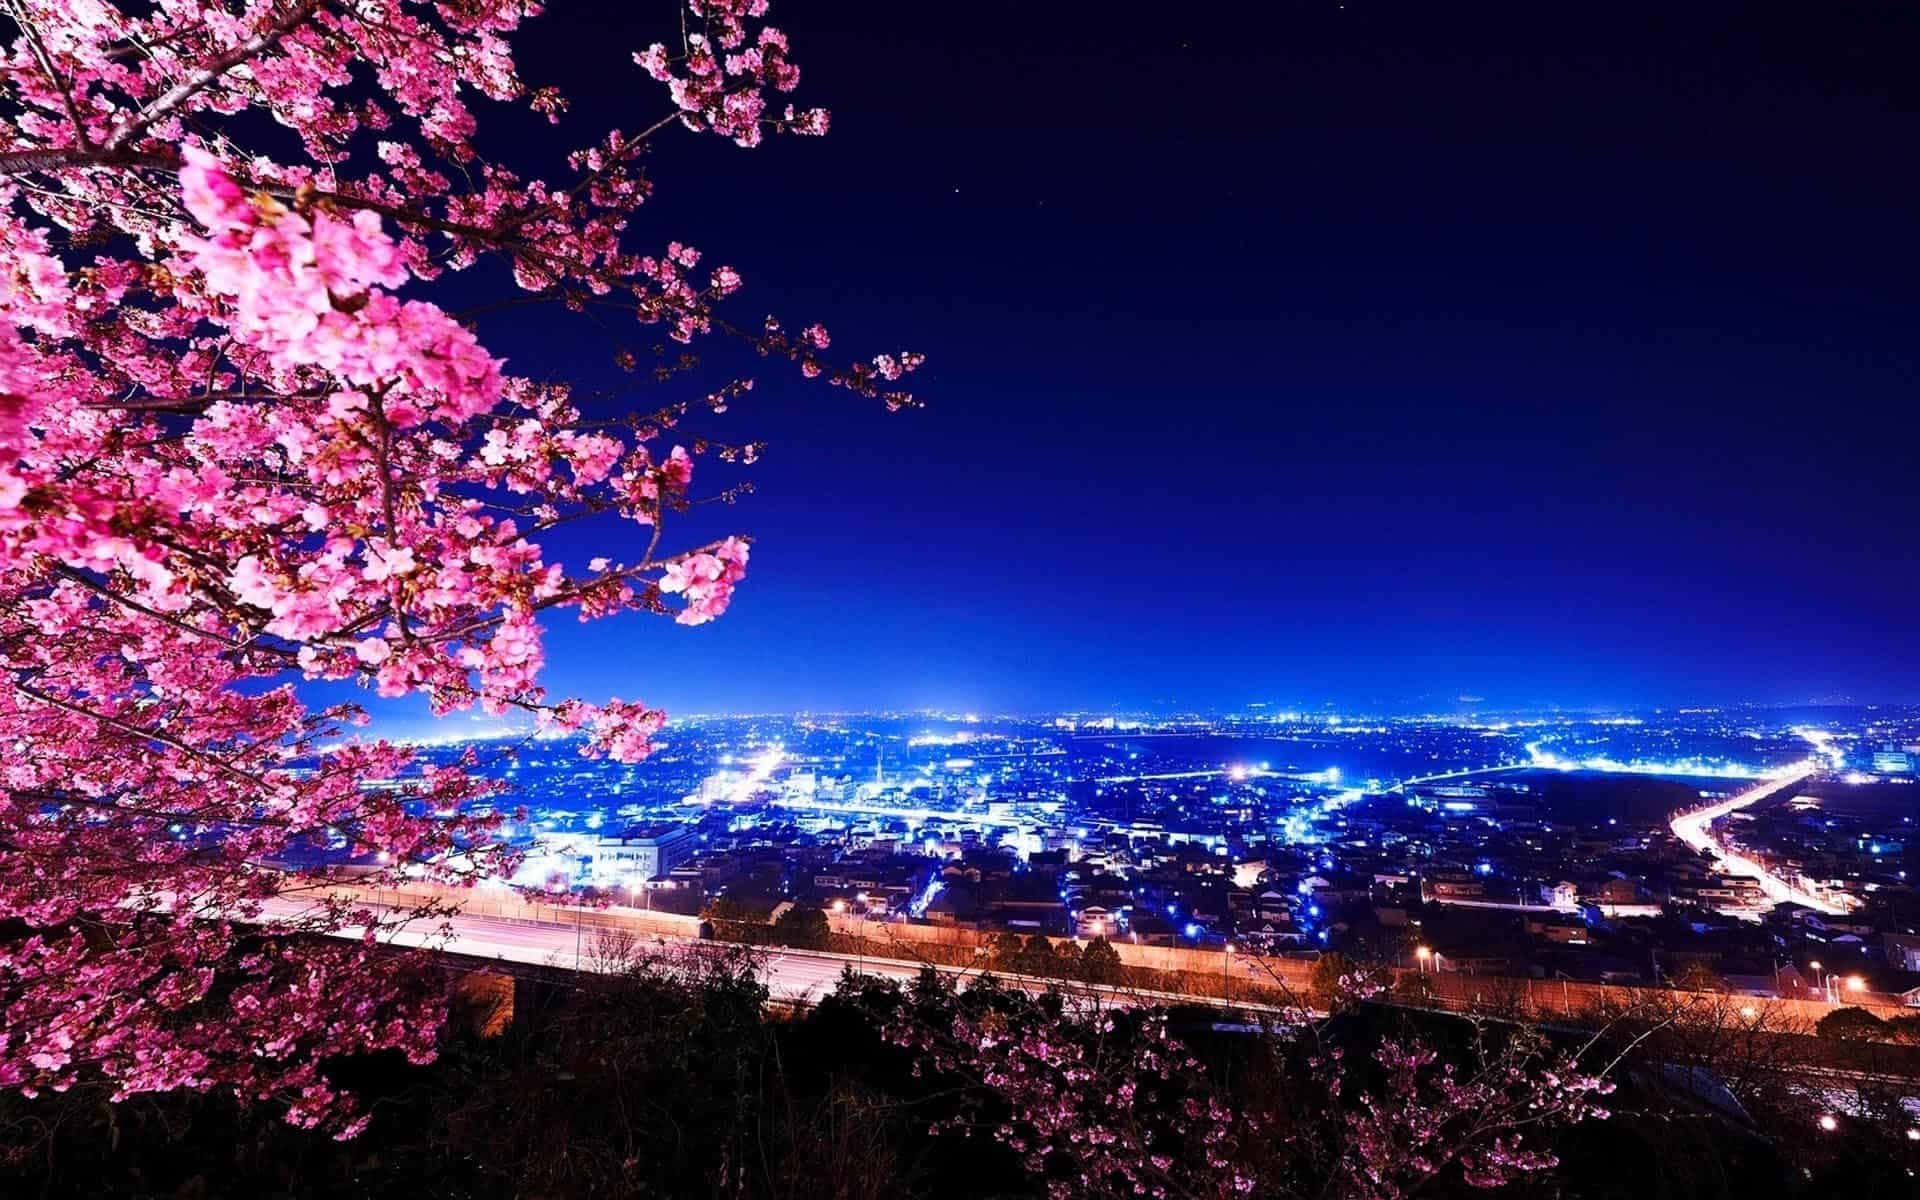 Fondode Pantalla De Tokio Con Árbol De Sakura Frente A La Ciudad.